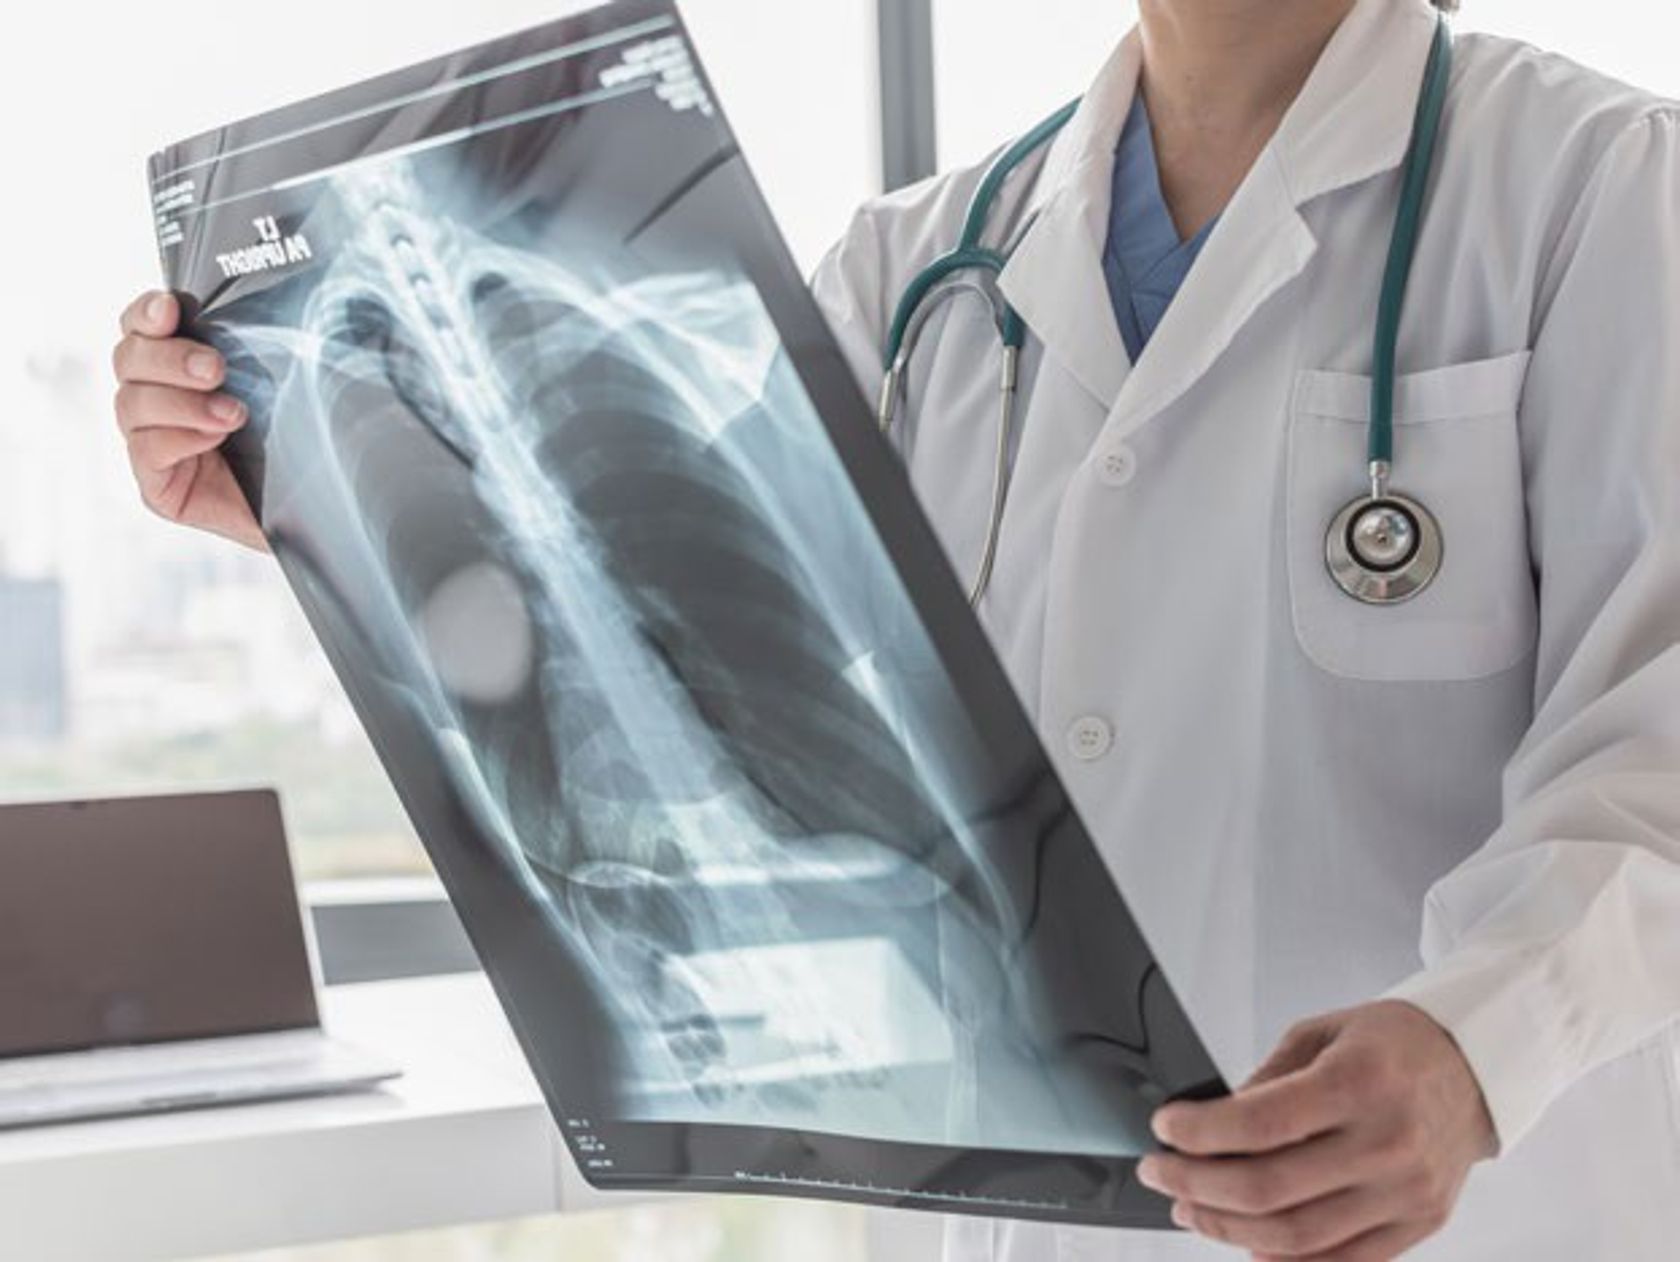 Arzt hält Röntgenaufnahme einer Lunge in den Händen und betrachtet sie.